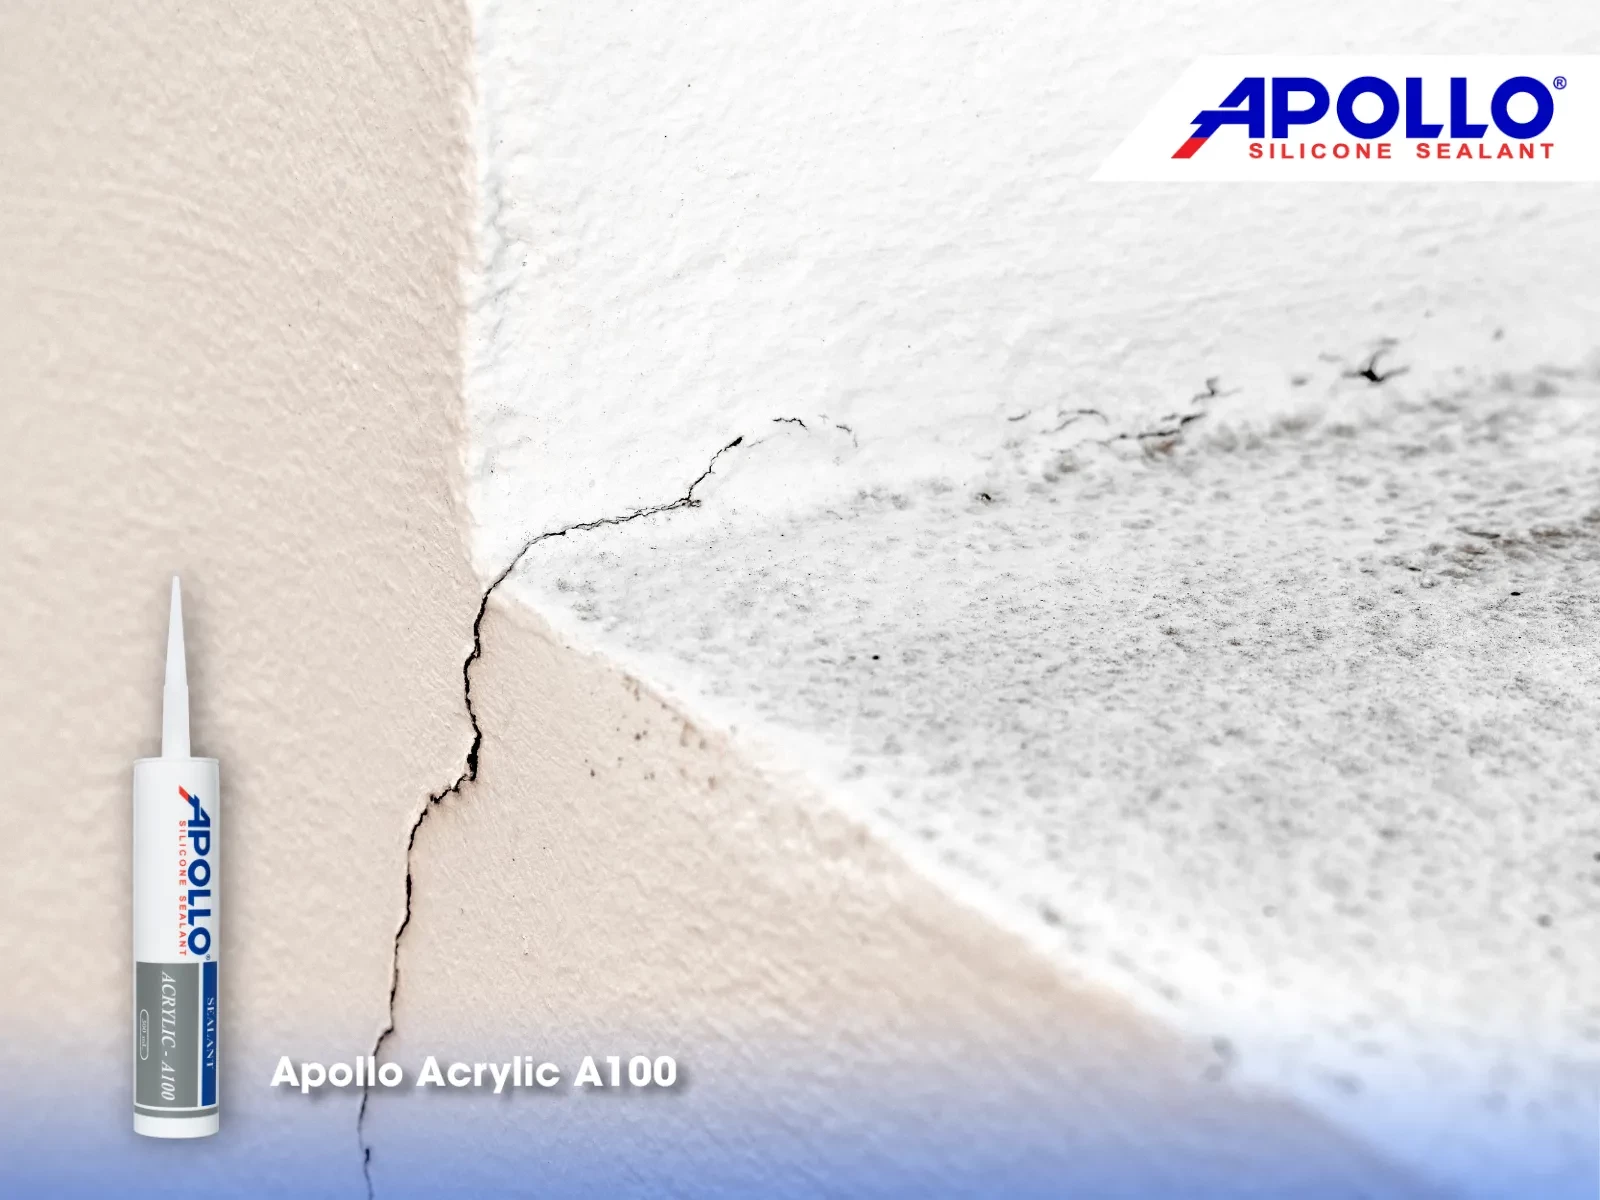 Keo tường Apollo Acrylic A100 được nhiều chuyên gia khuyên dùng để xử lý vết nứt tường nhỏ